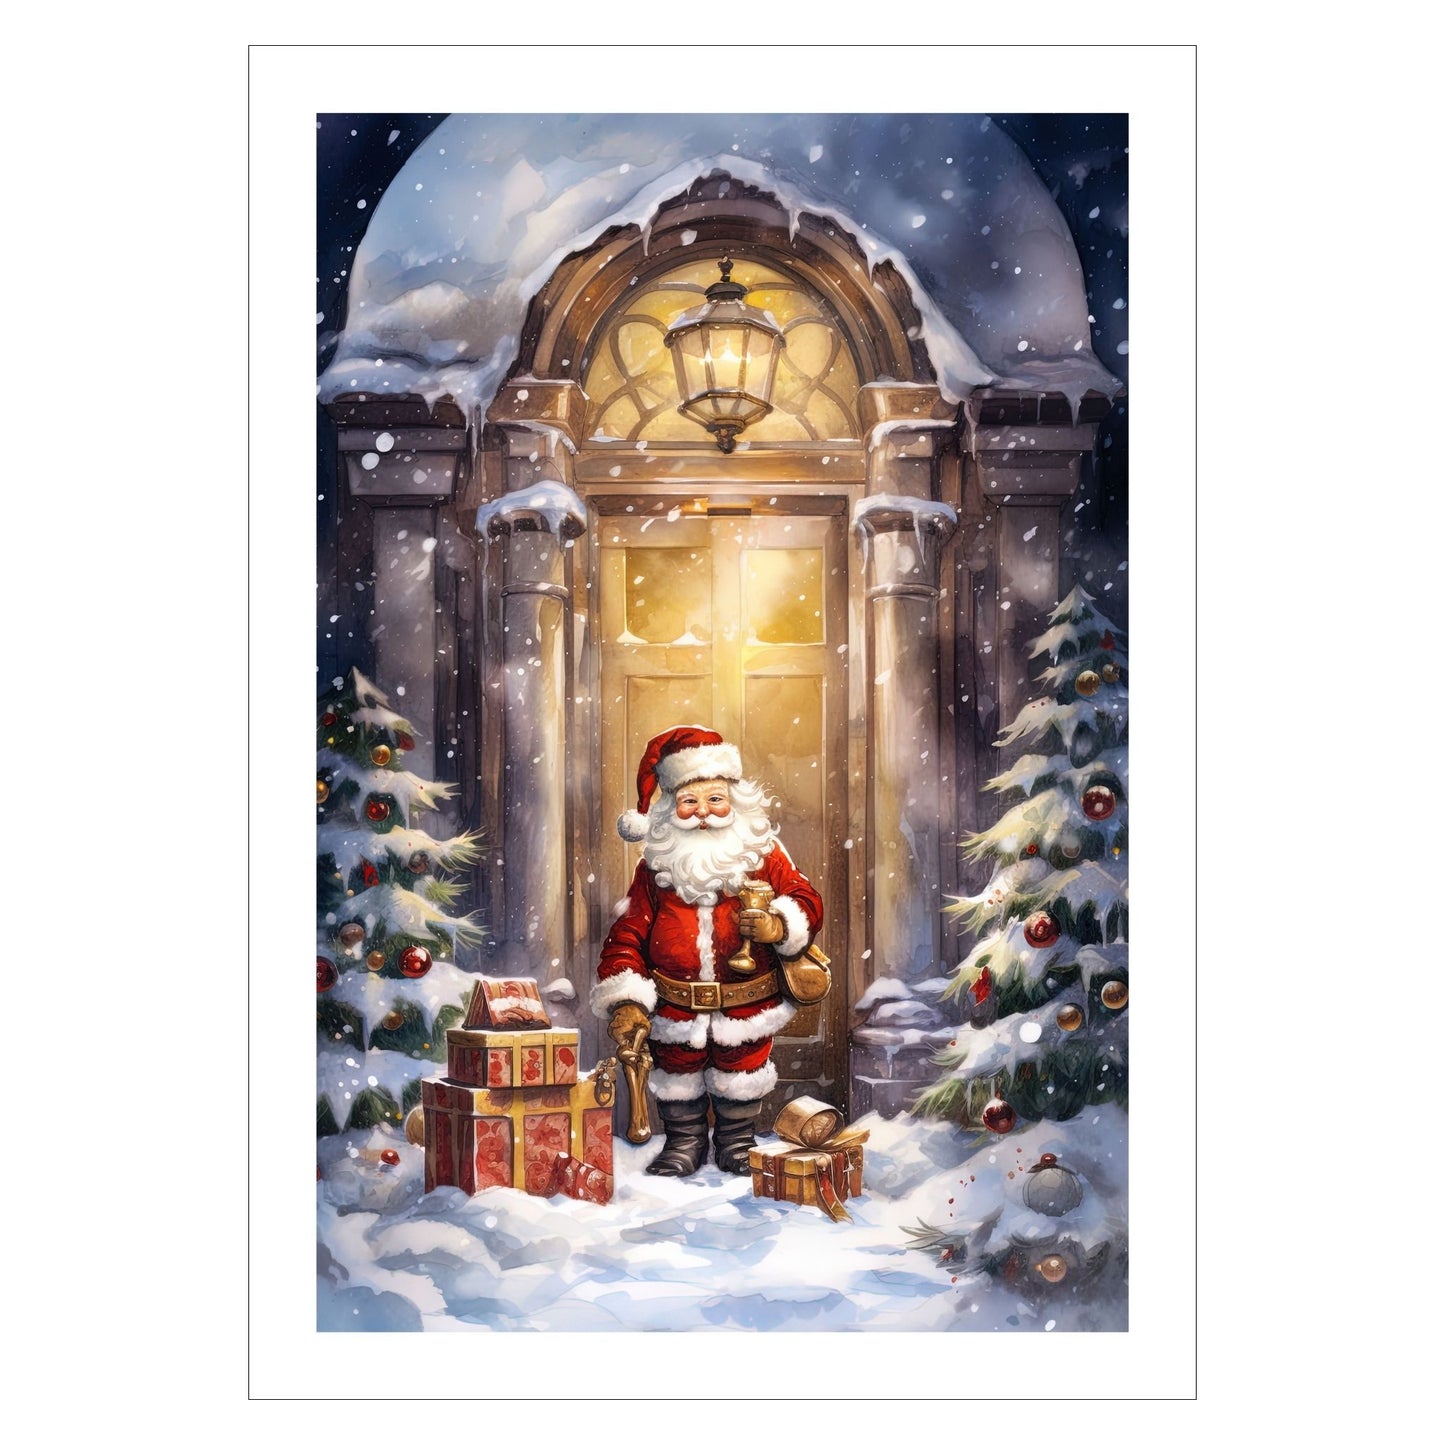 Grafisk motiv av julenisse som kommer med julepakker. Han står utenfor en dør, og ute er det snø og pyntede juletrær. Han er kledd i rød nissedrakt, har langt, hvitt skjegg, og på hodet har han en rød nisselue med hvit pelskant. Motivet fås som plakat og på lerret.